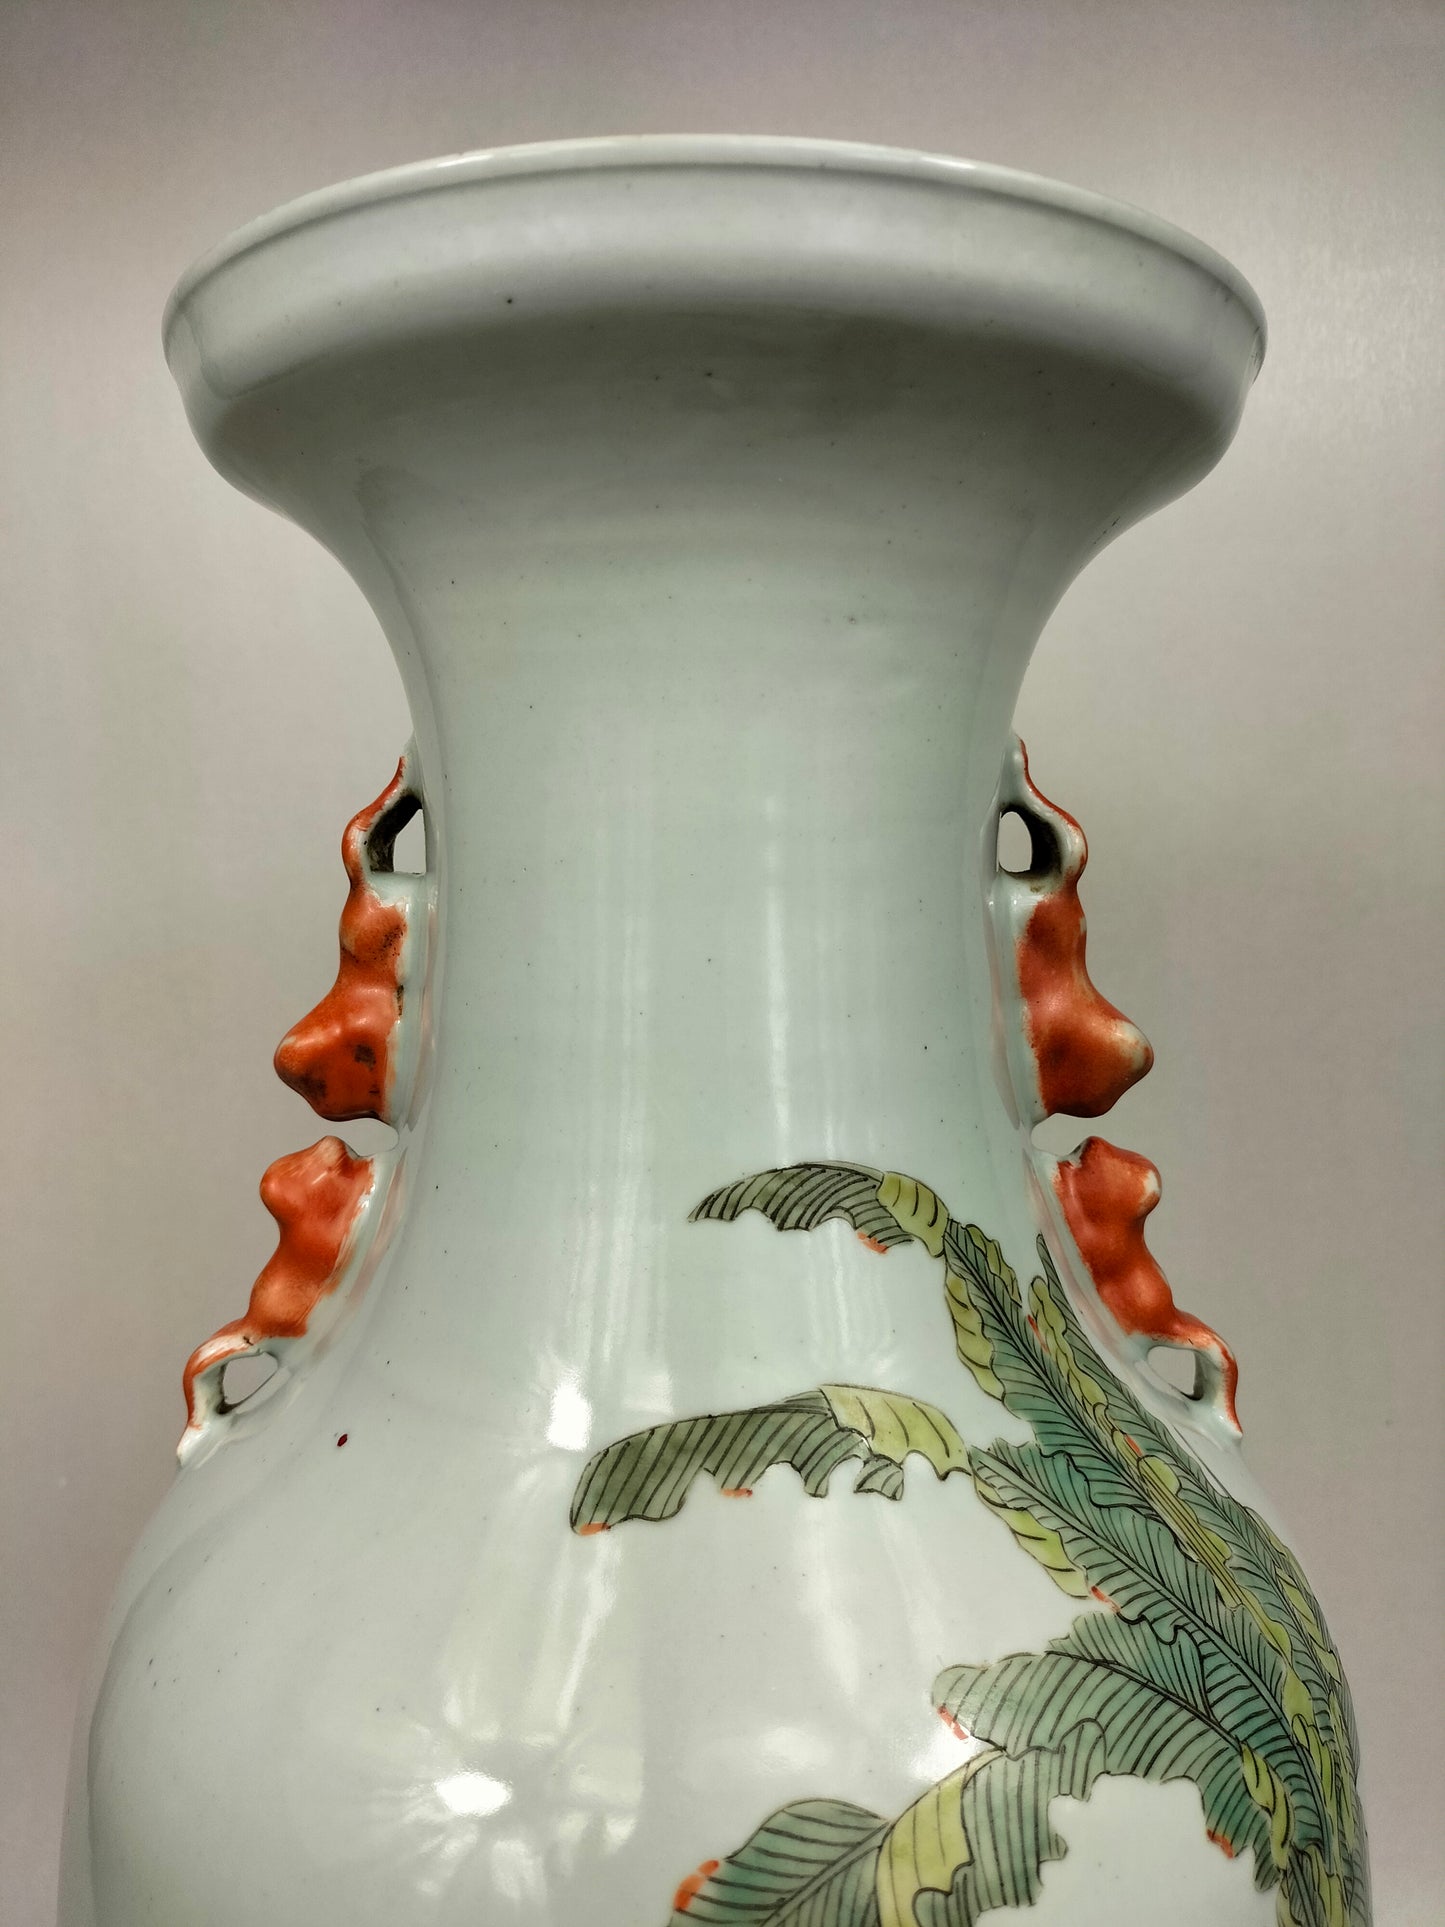 大型中国彩绘花瓶，饰有花园场景 // 20 世纪